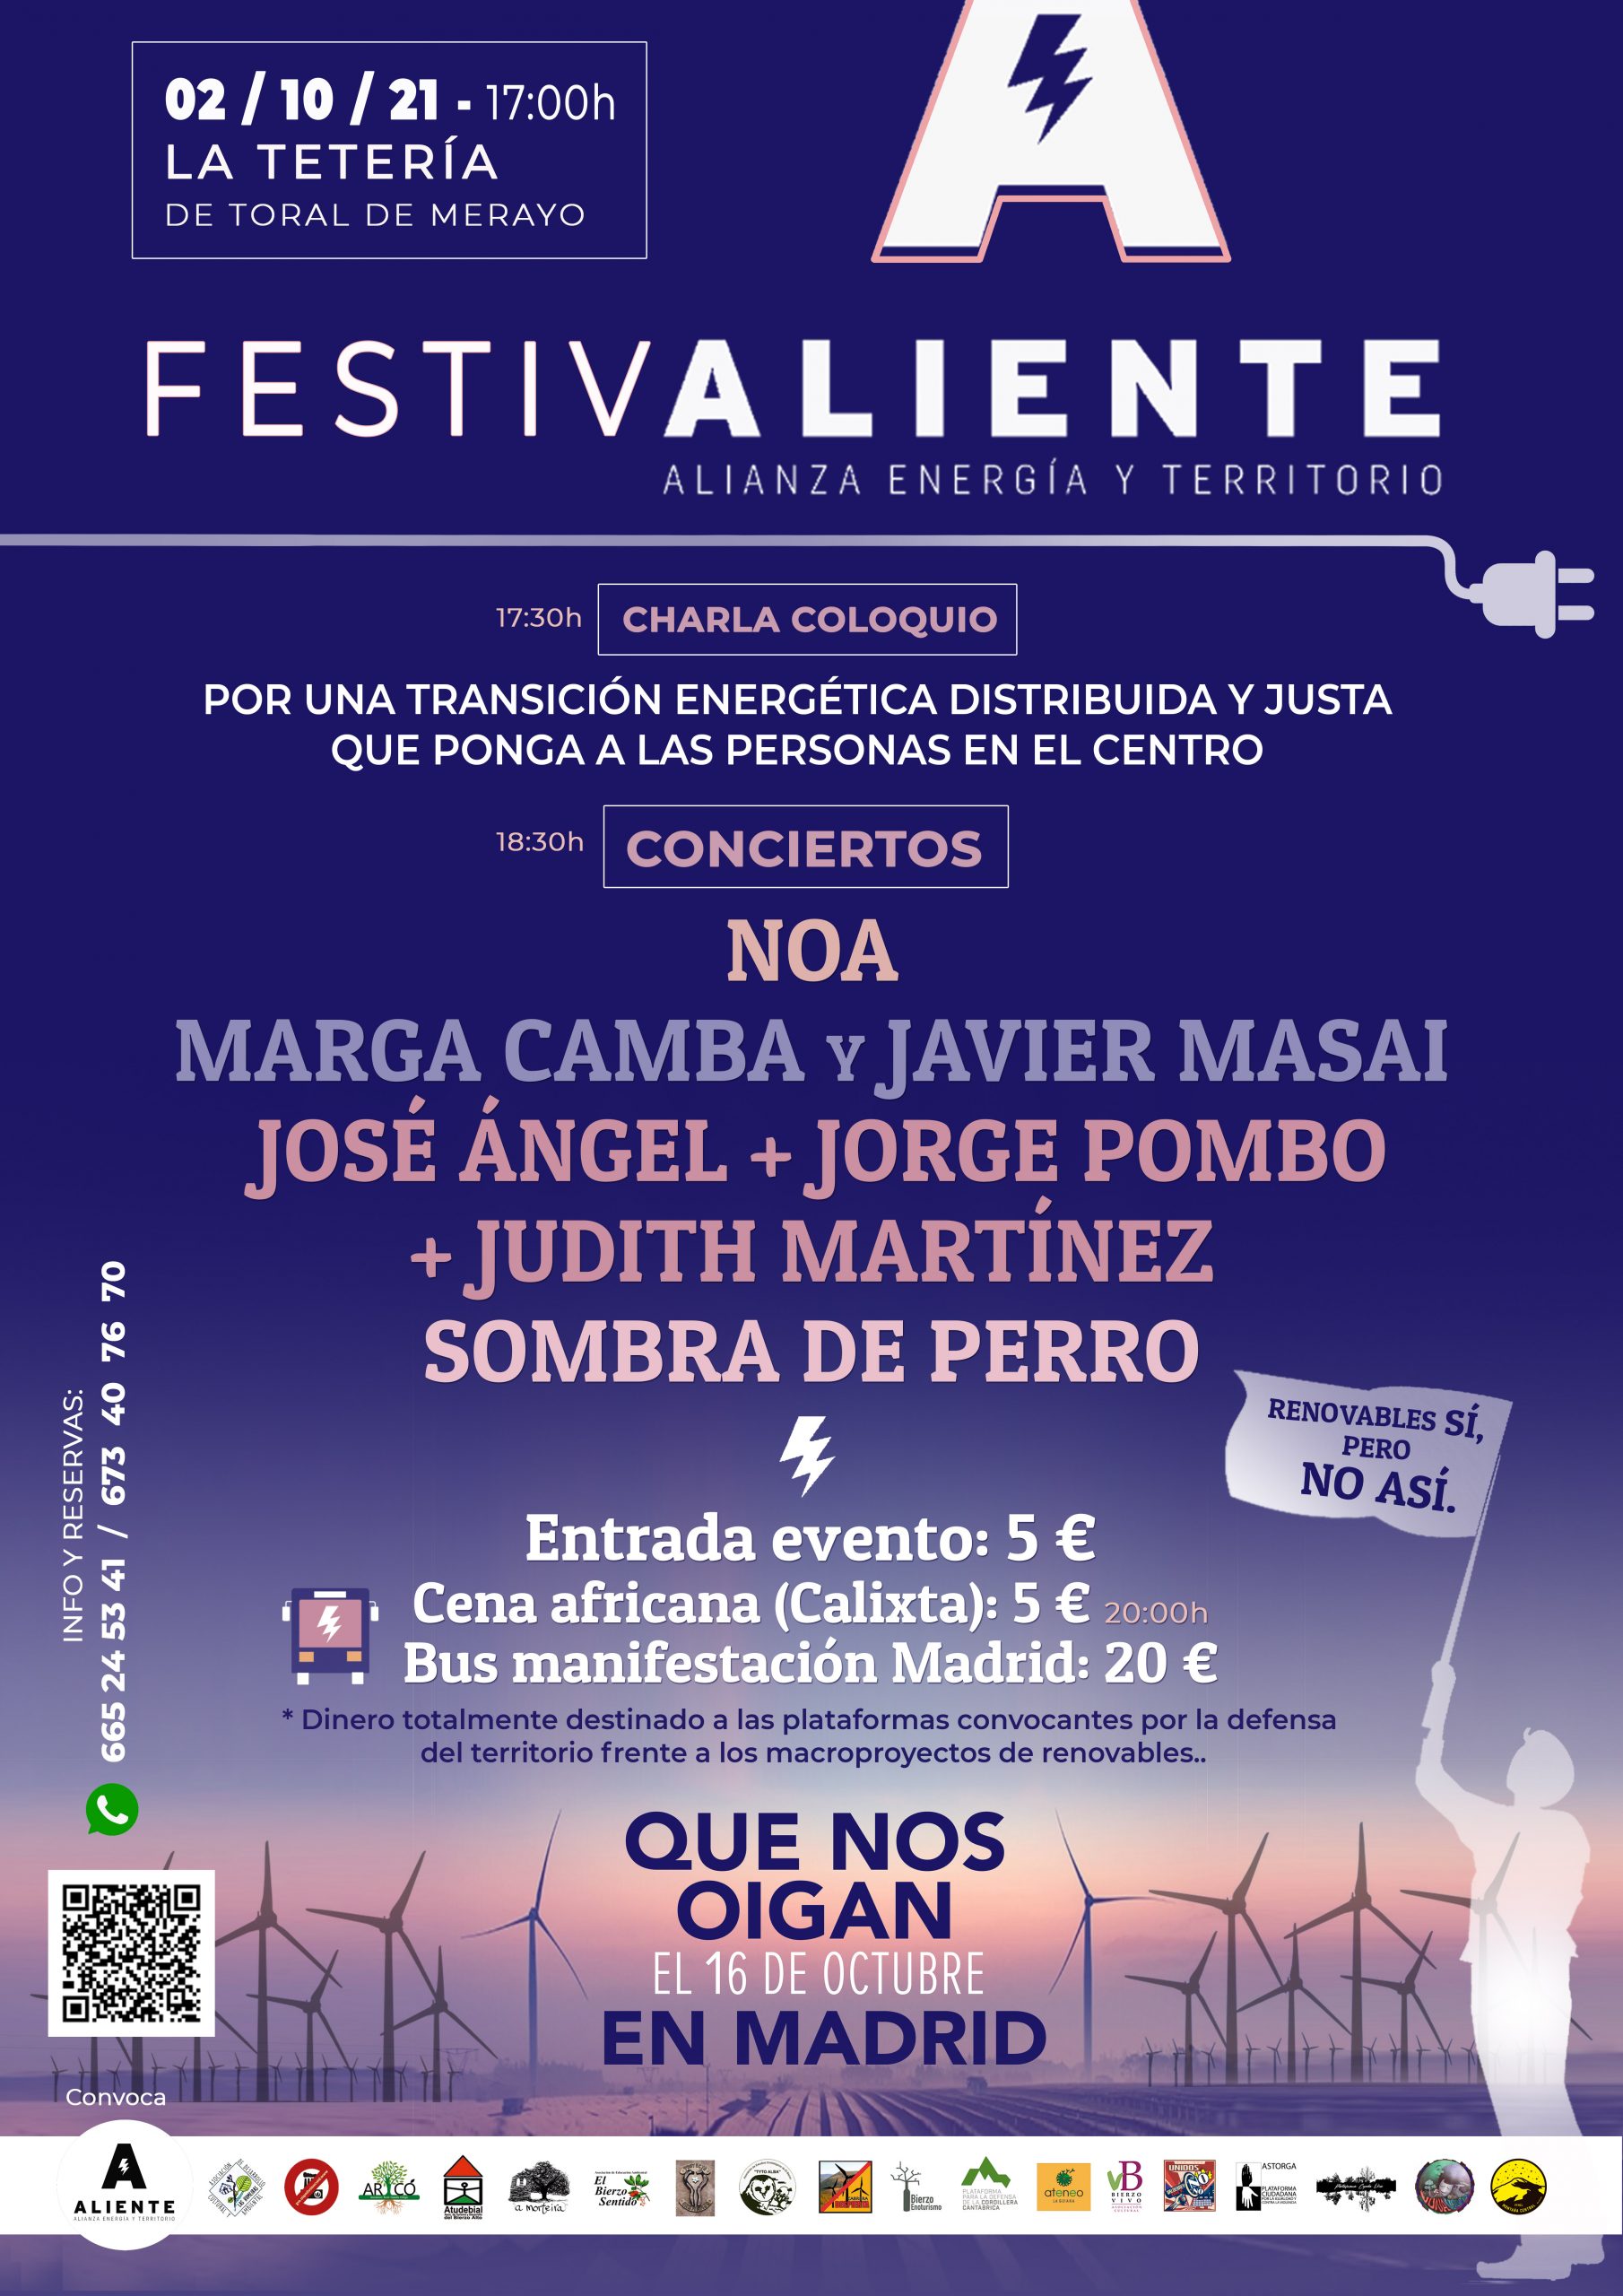 FestivALIENTE se celebra el sábado 2 de octubre para recaudar dinero que permita asistir a la manifestación "Que nos oigan en Madrid" 2